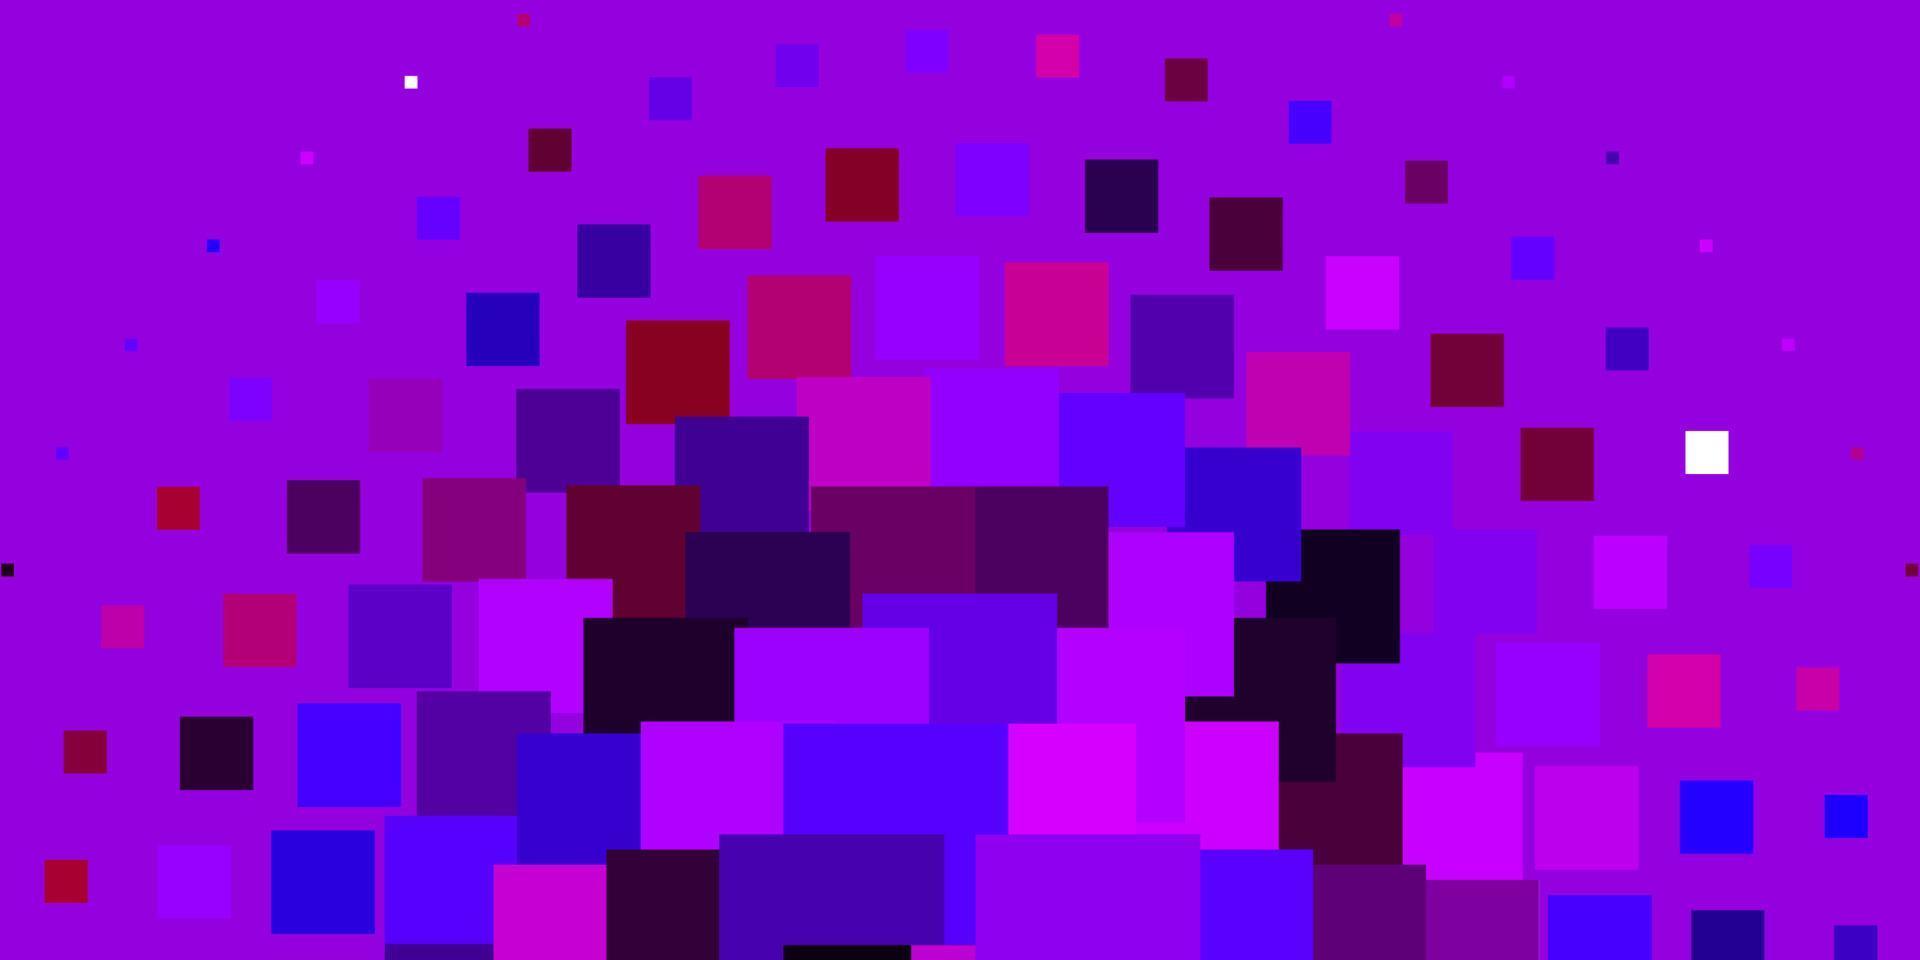 fond de vecteur violet clair avec des rectangles.